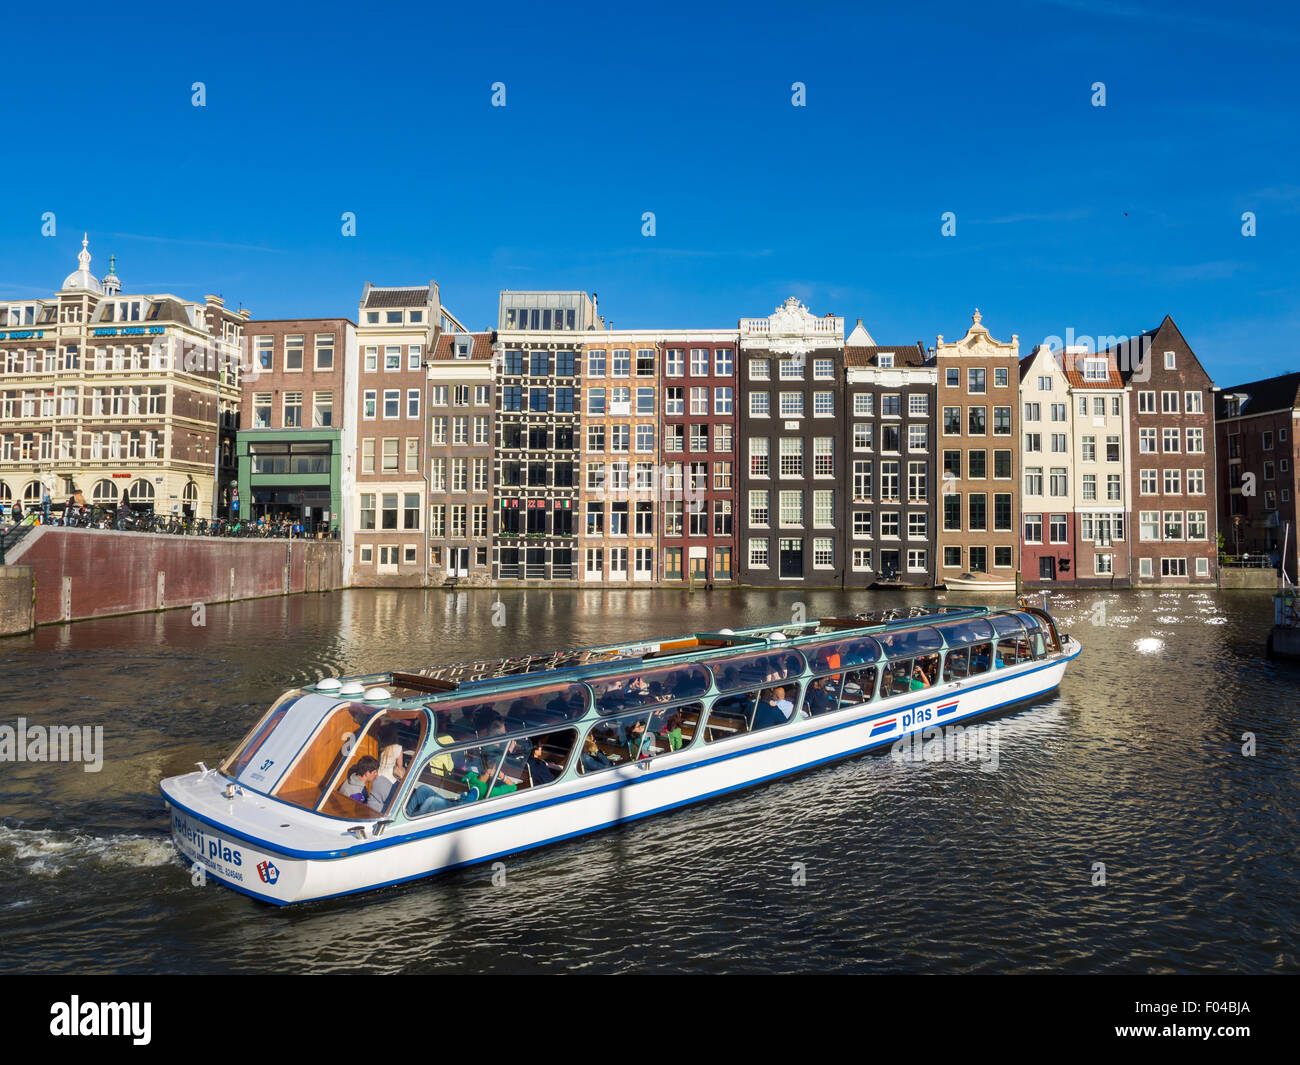 Kreuzfahrtschiff Touristen am Damrak Kanal in Amsterdam, Niederlande, an einem Sommertag. Traditionelle Häuser im Hintergrund. Stockfoto